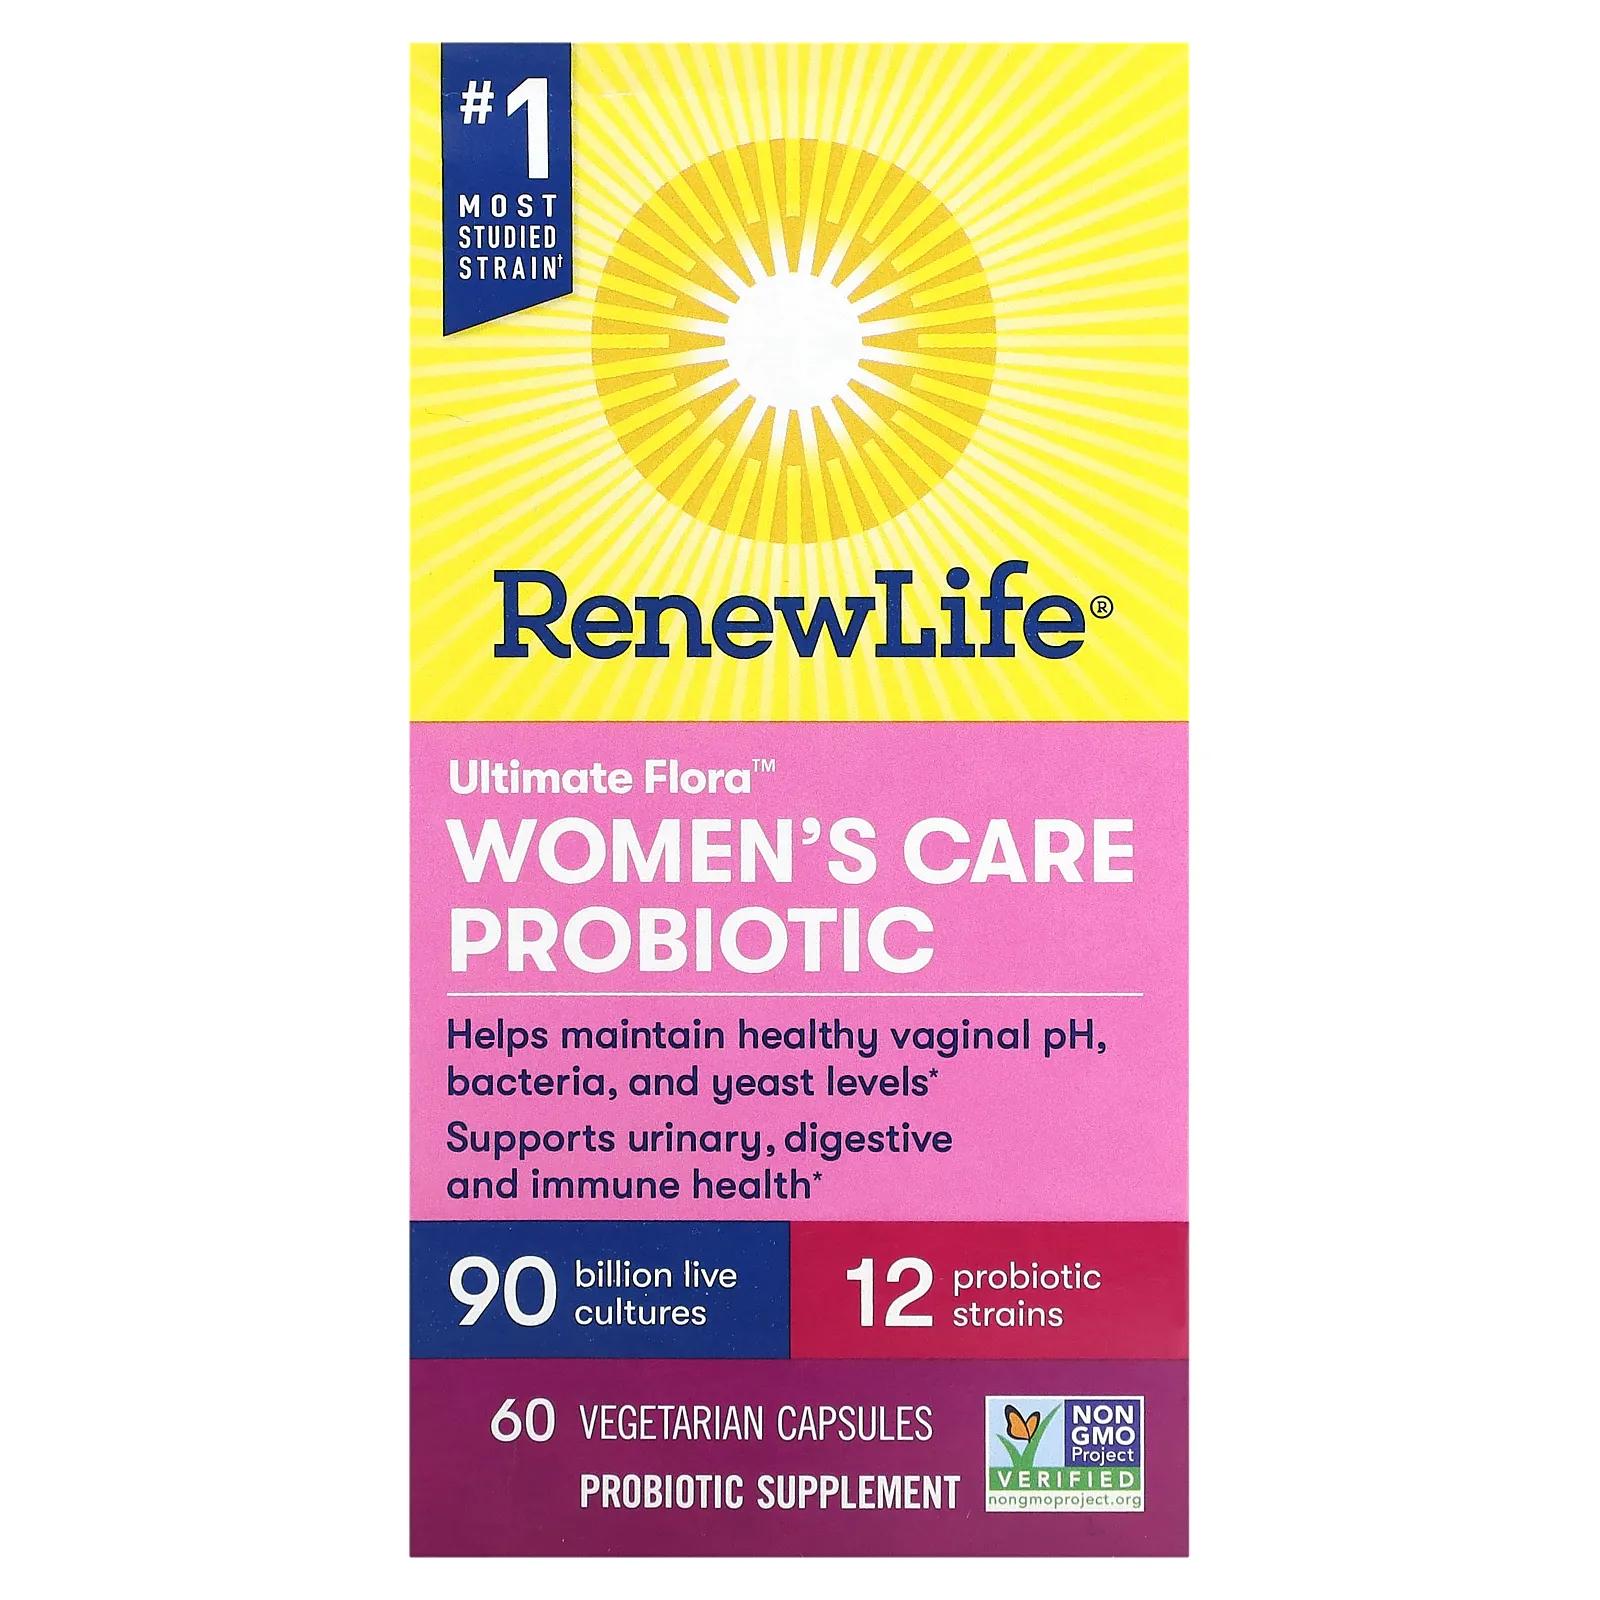 Renew Life Пробиотик Ultimate Flora Women's Care 90 миллиардов 60 вег капсул полностью чистая органическая пребиотическая клетчатка renew life